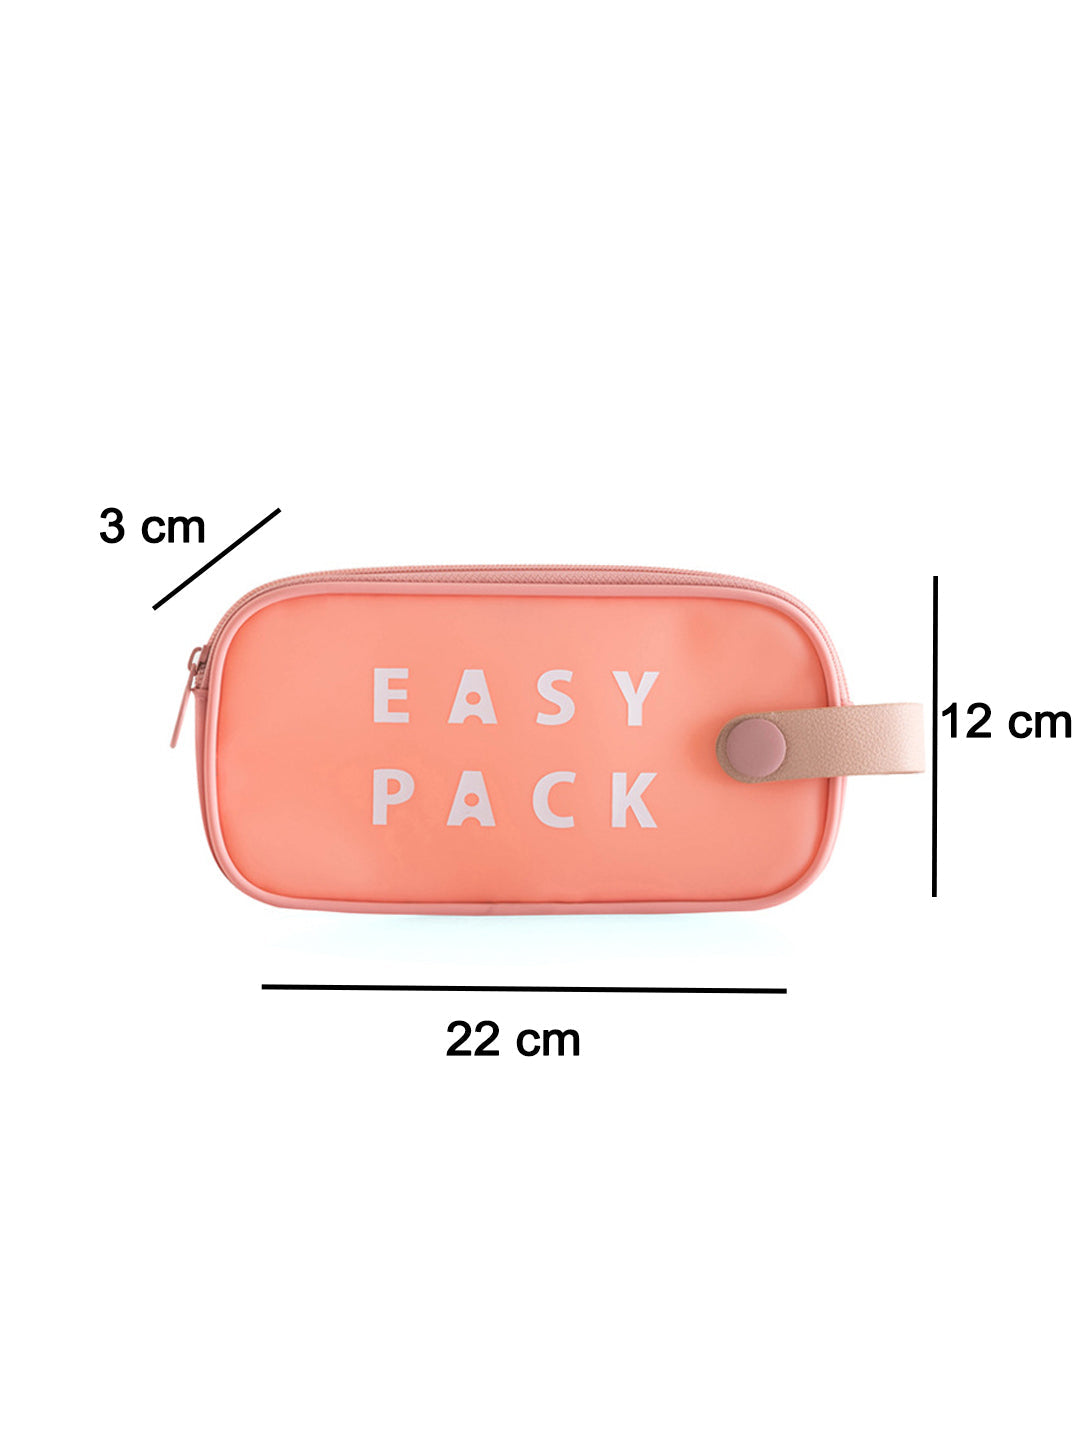 VON CASA Rectangular Plastic Travel Pouch - Peach